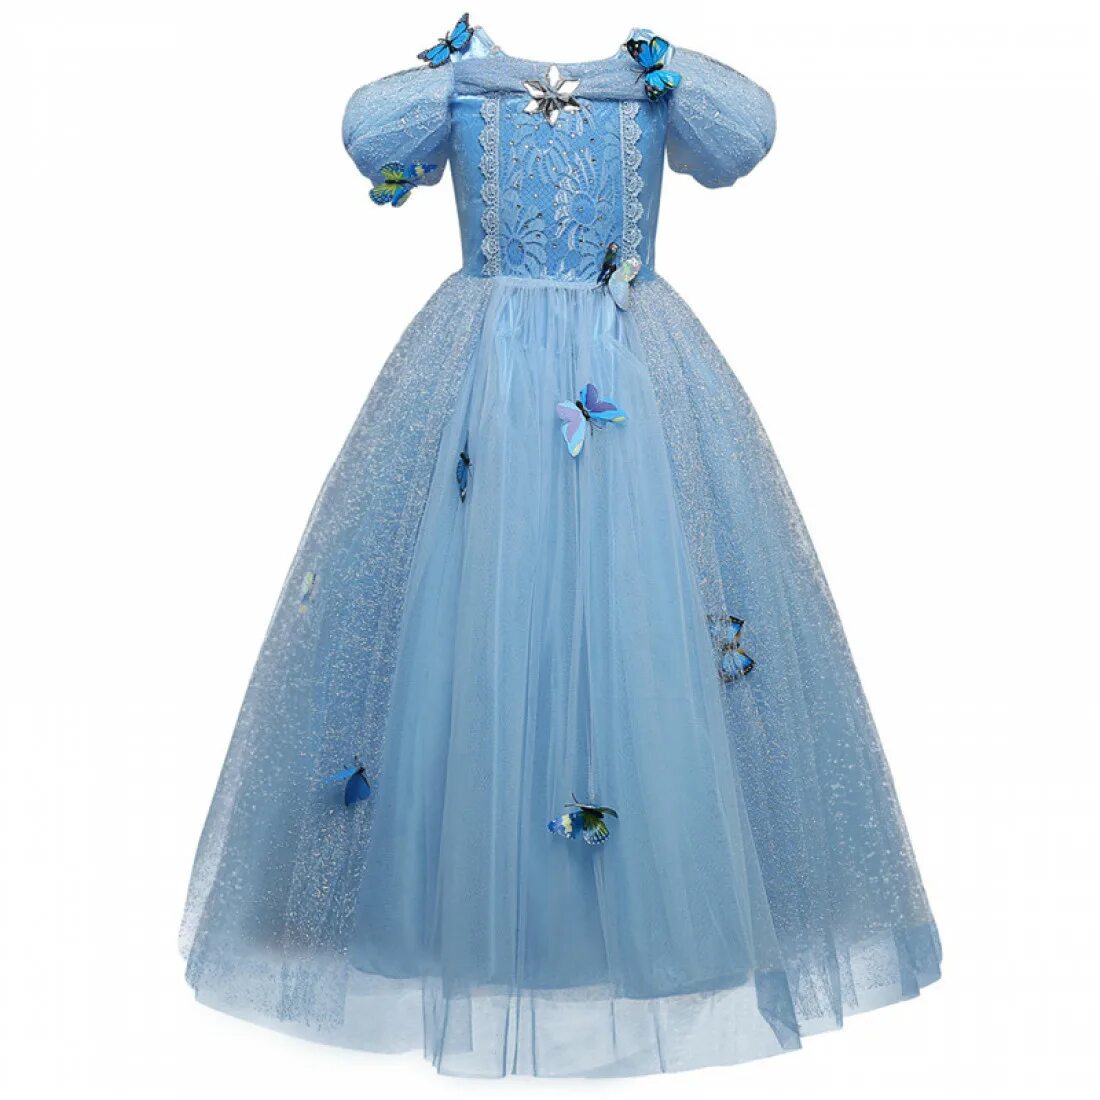 Платье Cinderella 1088. Платья для принцессы. Платье принцессы для девочки. Платье Золушки. Скачай платье принцессы